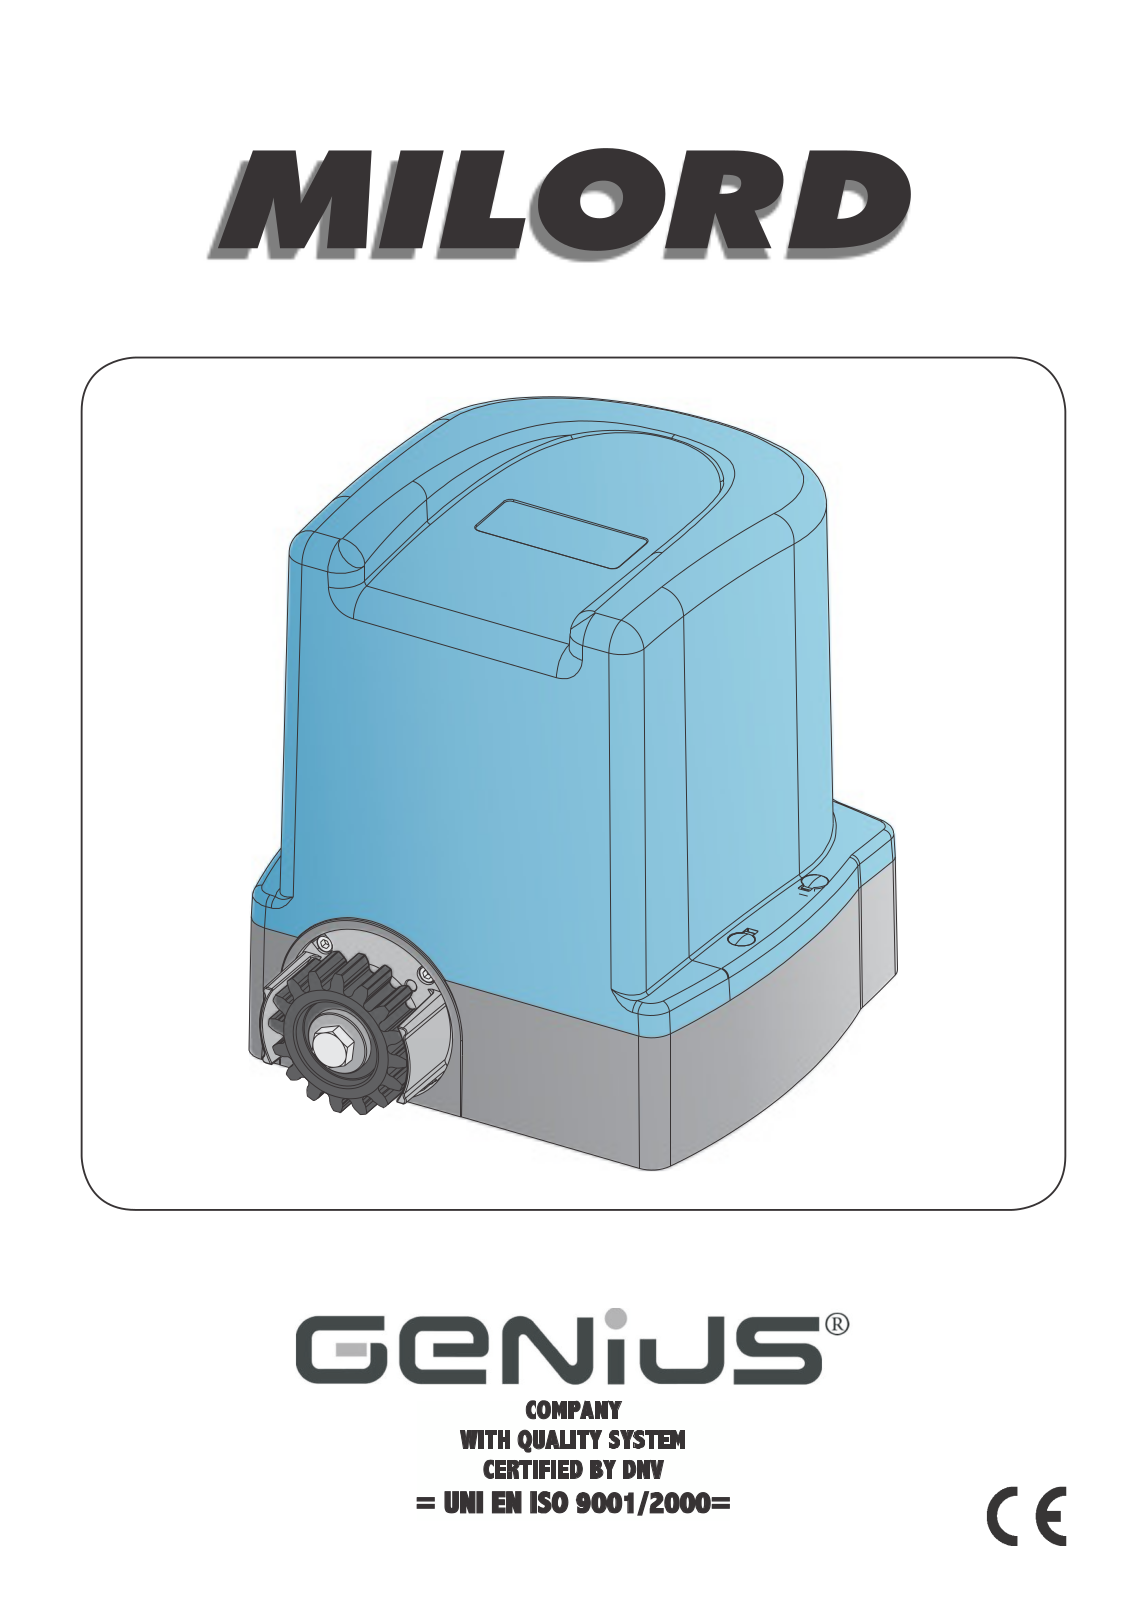 Genius Milord User Manual